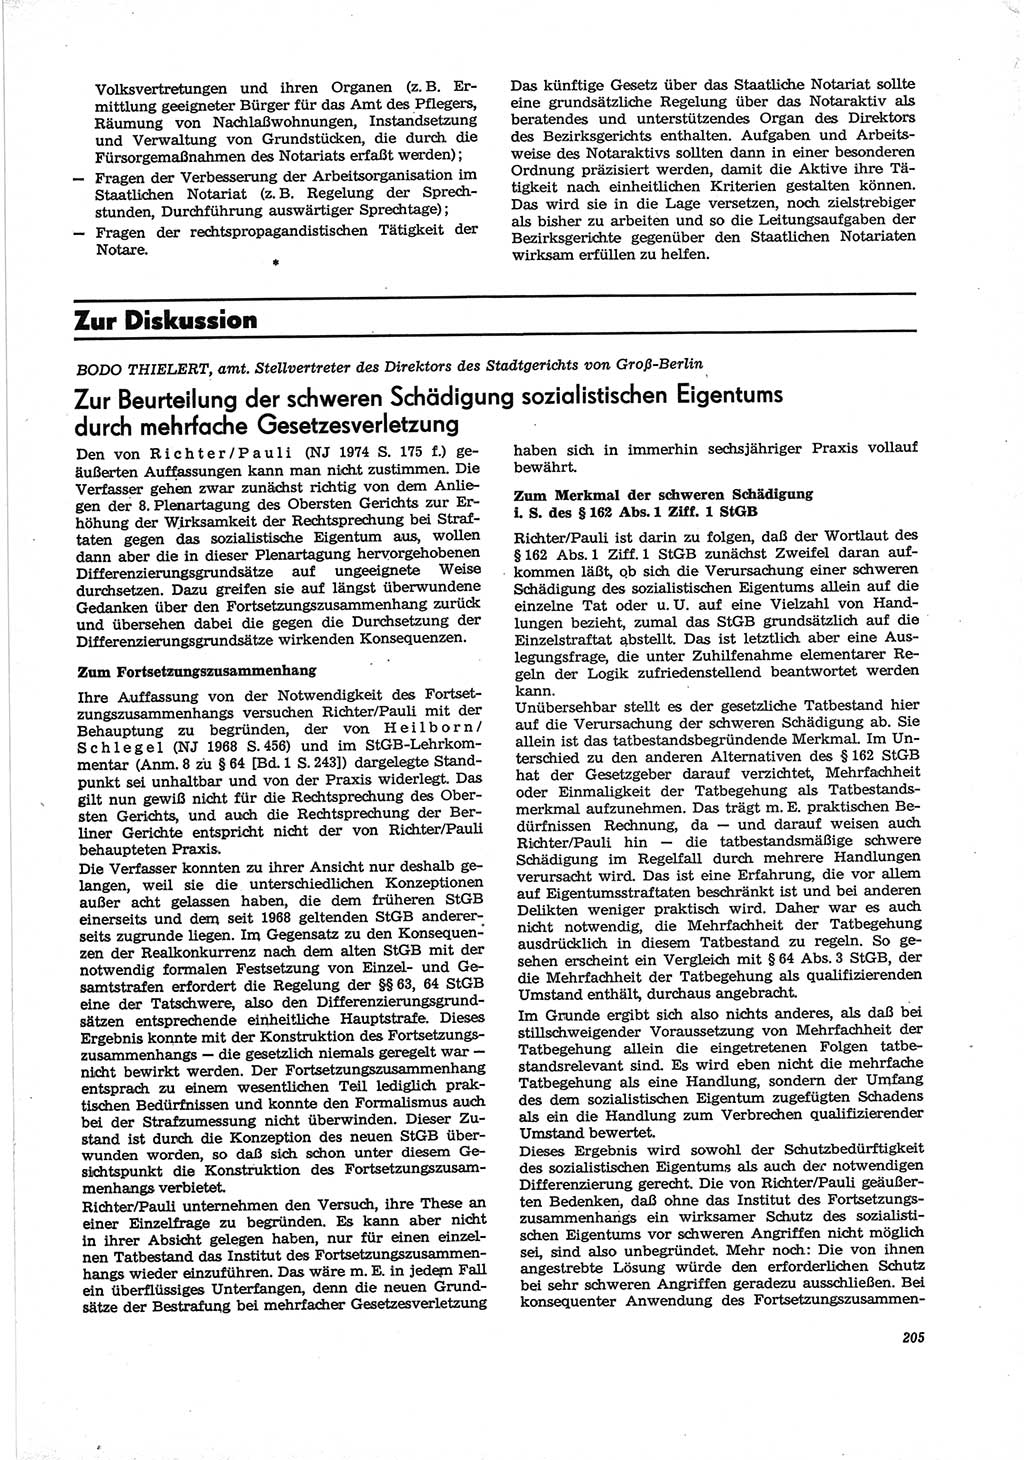 Neue Justiz (NJ), Zeitschrift für Recht und Rechtswissenschaft [Deutsche Demokratische Republik (DDR)], 28. Jahrgang 1974, Seite 205 (NJ DDR 1974, S. 205)